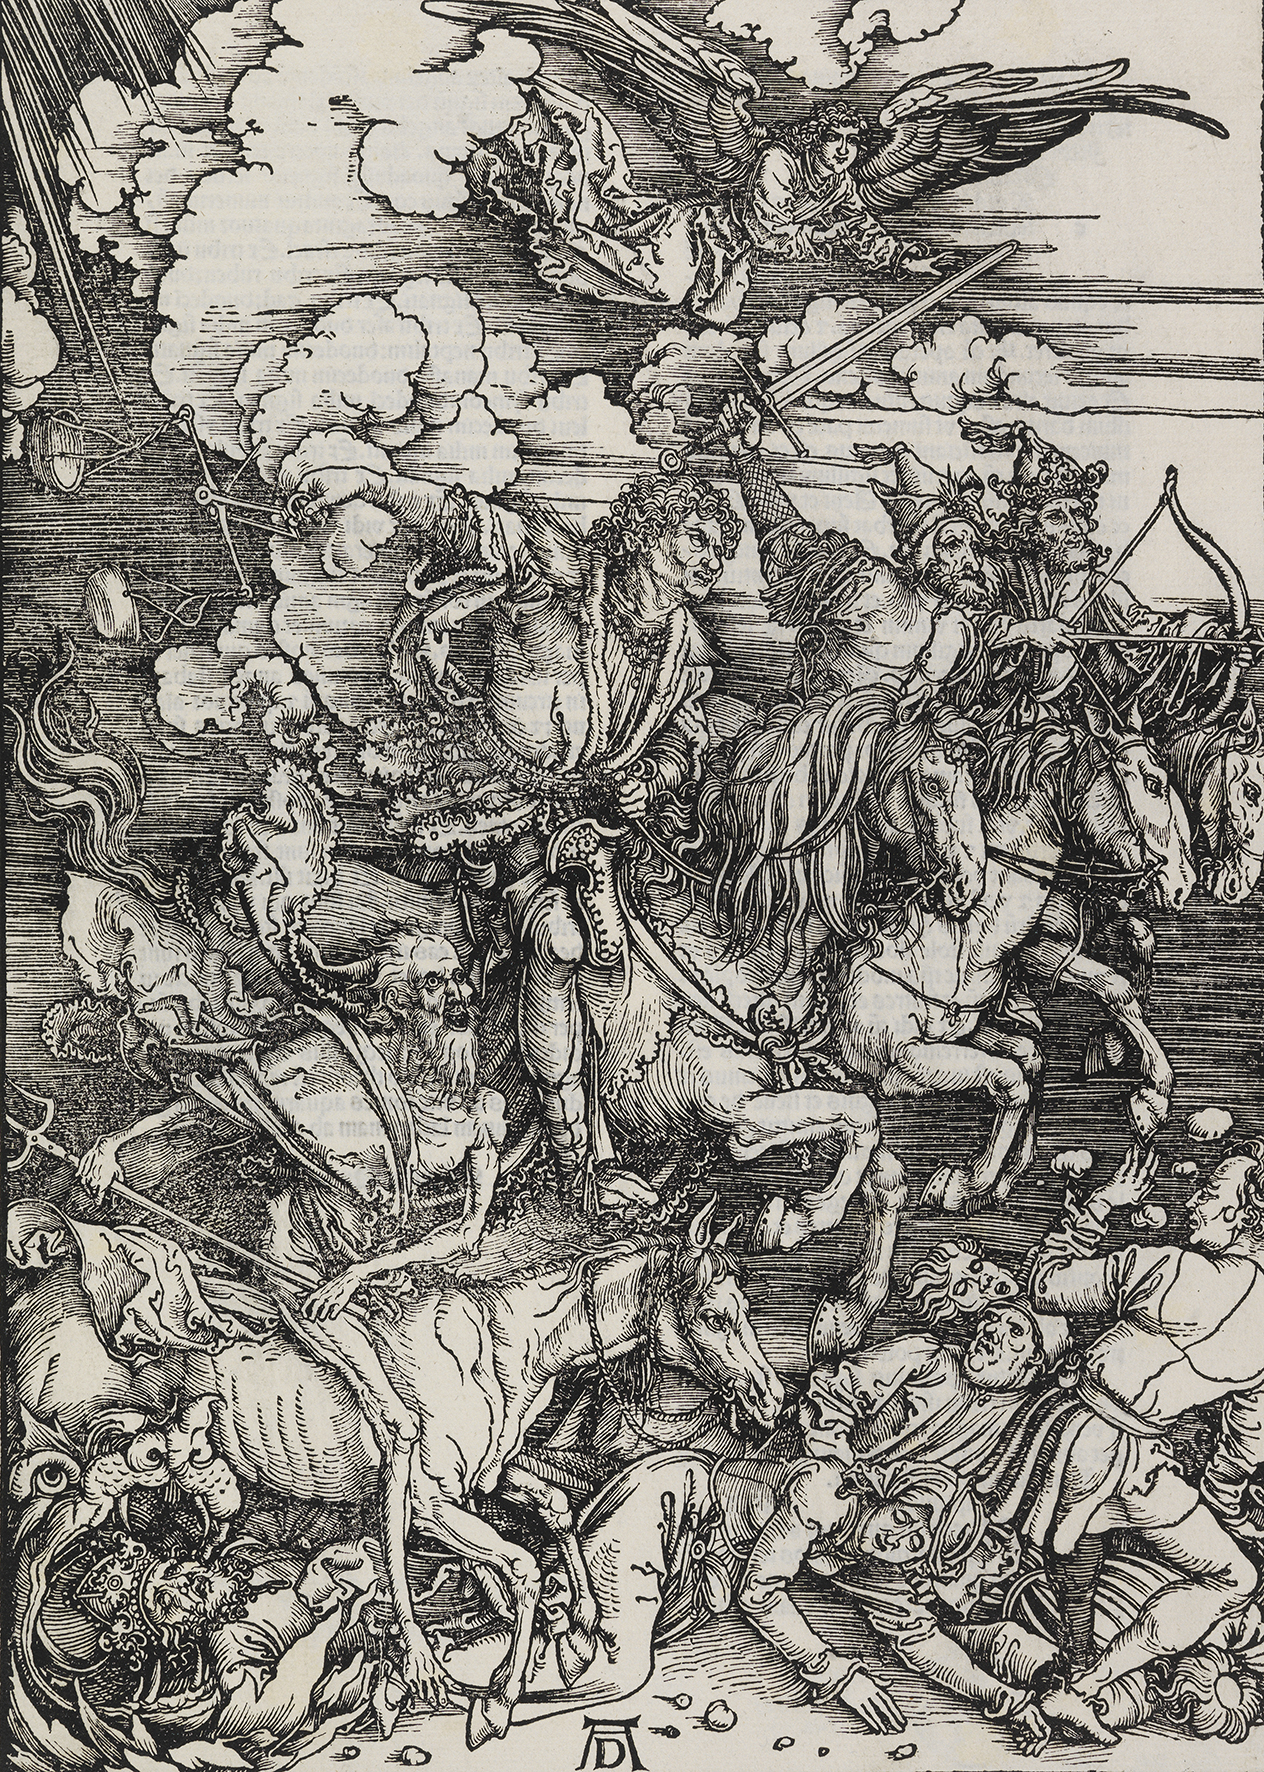 Holzschnitt Die apokalyptischen Reiter von Albrecht Dürer, entstanden 1511. Es zeigt einen Reiter mit erhobenen Schwert. Der Reiter wird von anderen bewaffneten Reitern begleitet. Auf dem Boden liegen Menschen und am Himmel ist ein Engel.